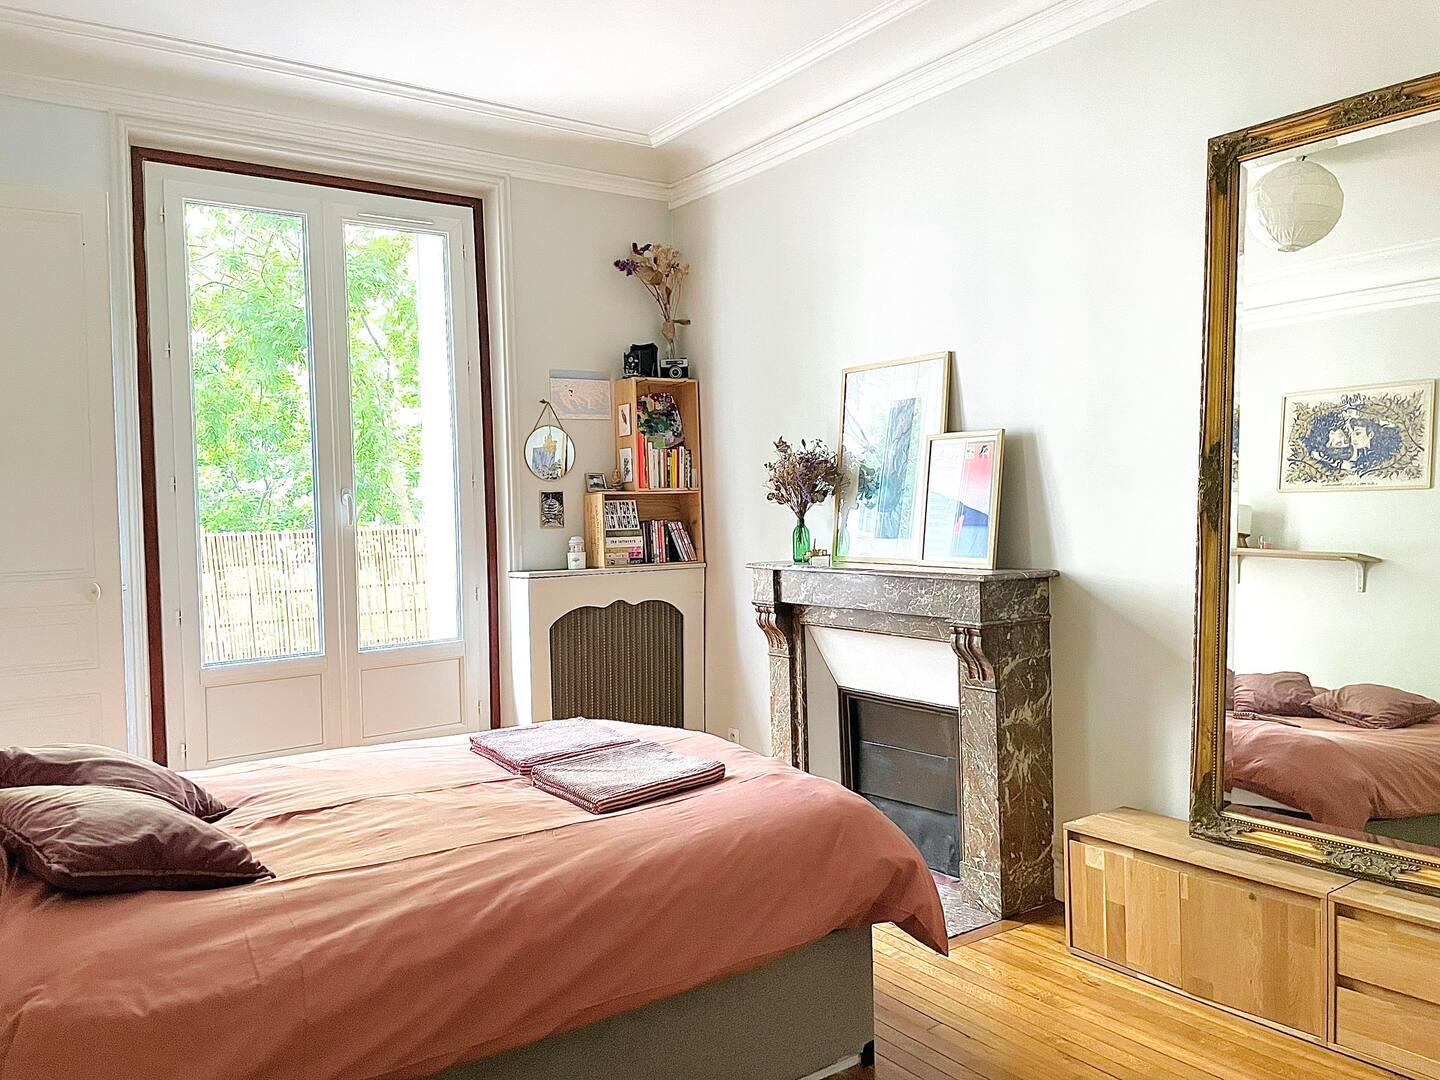 Hôte GreenGo: Appartement parisien typique - cosy & lumineux - Image 10